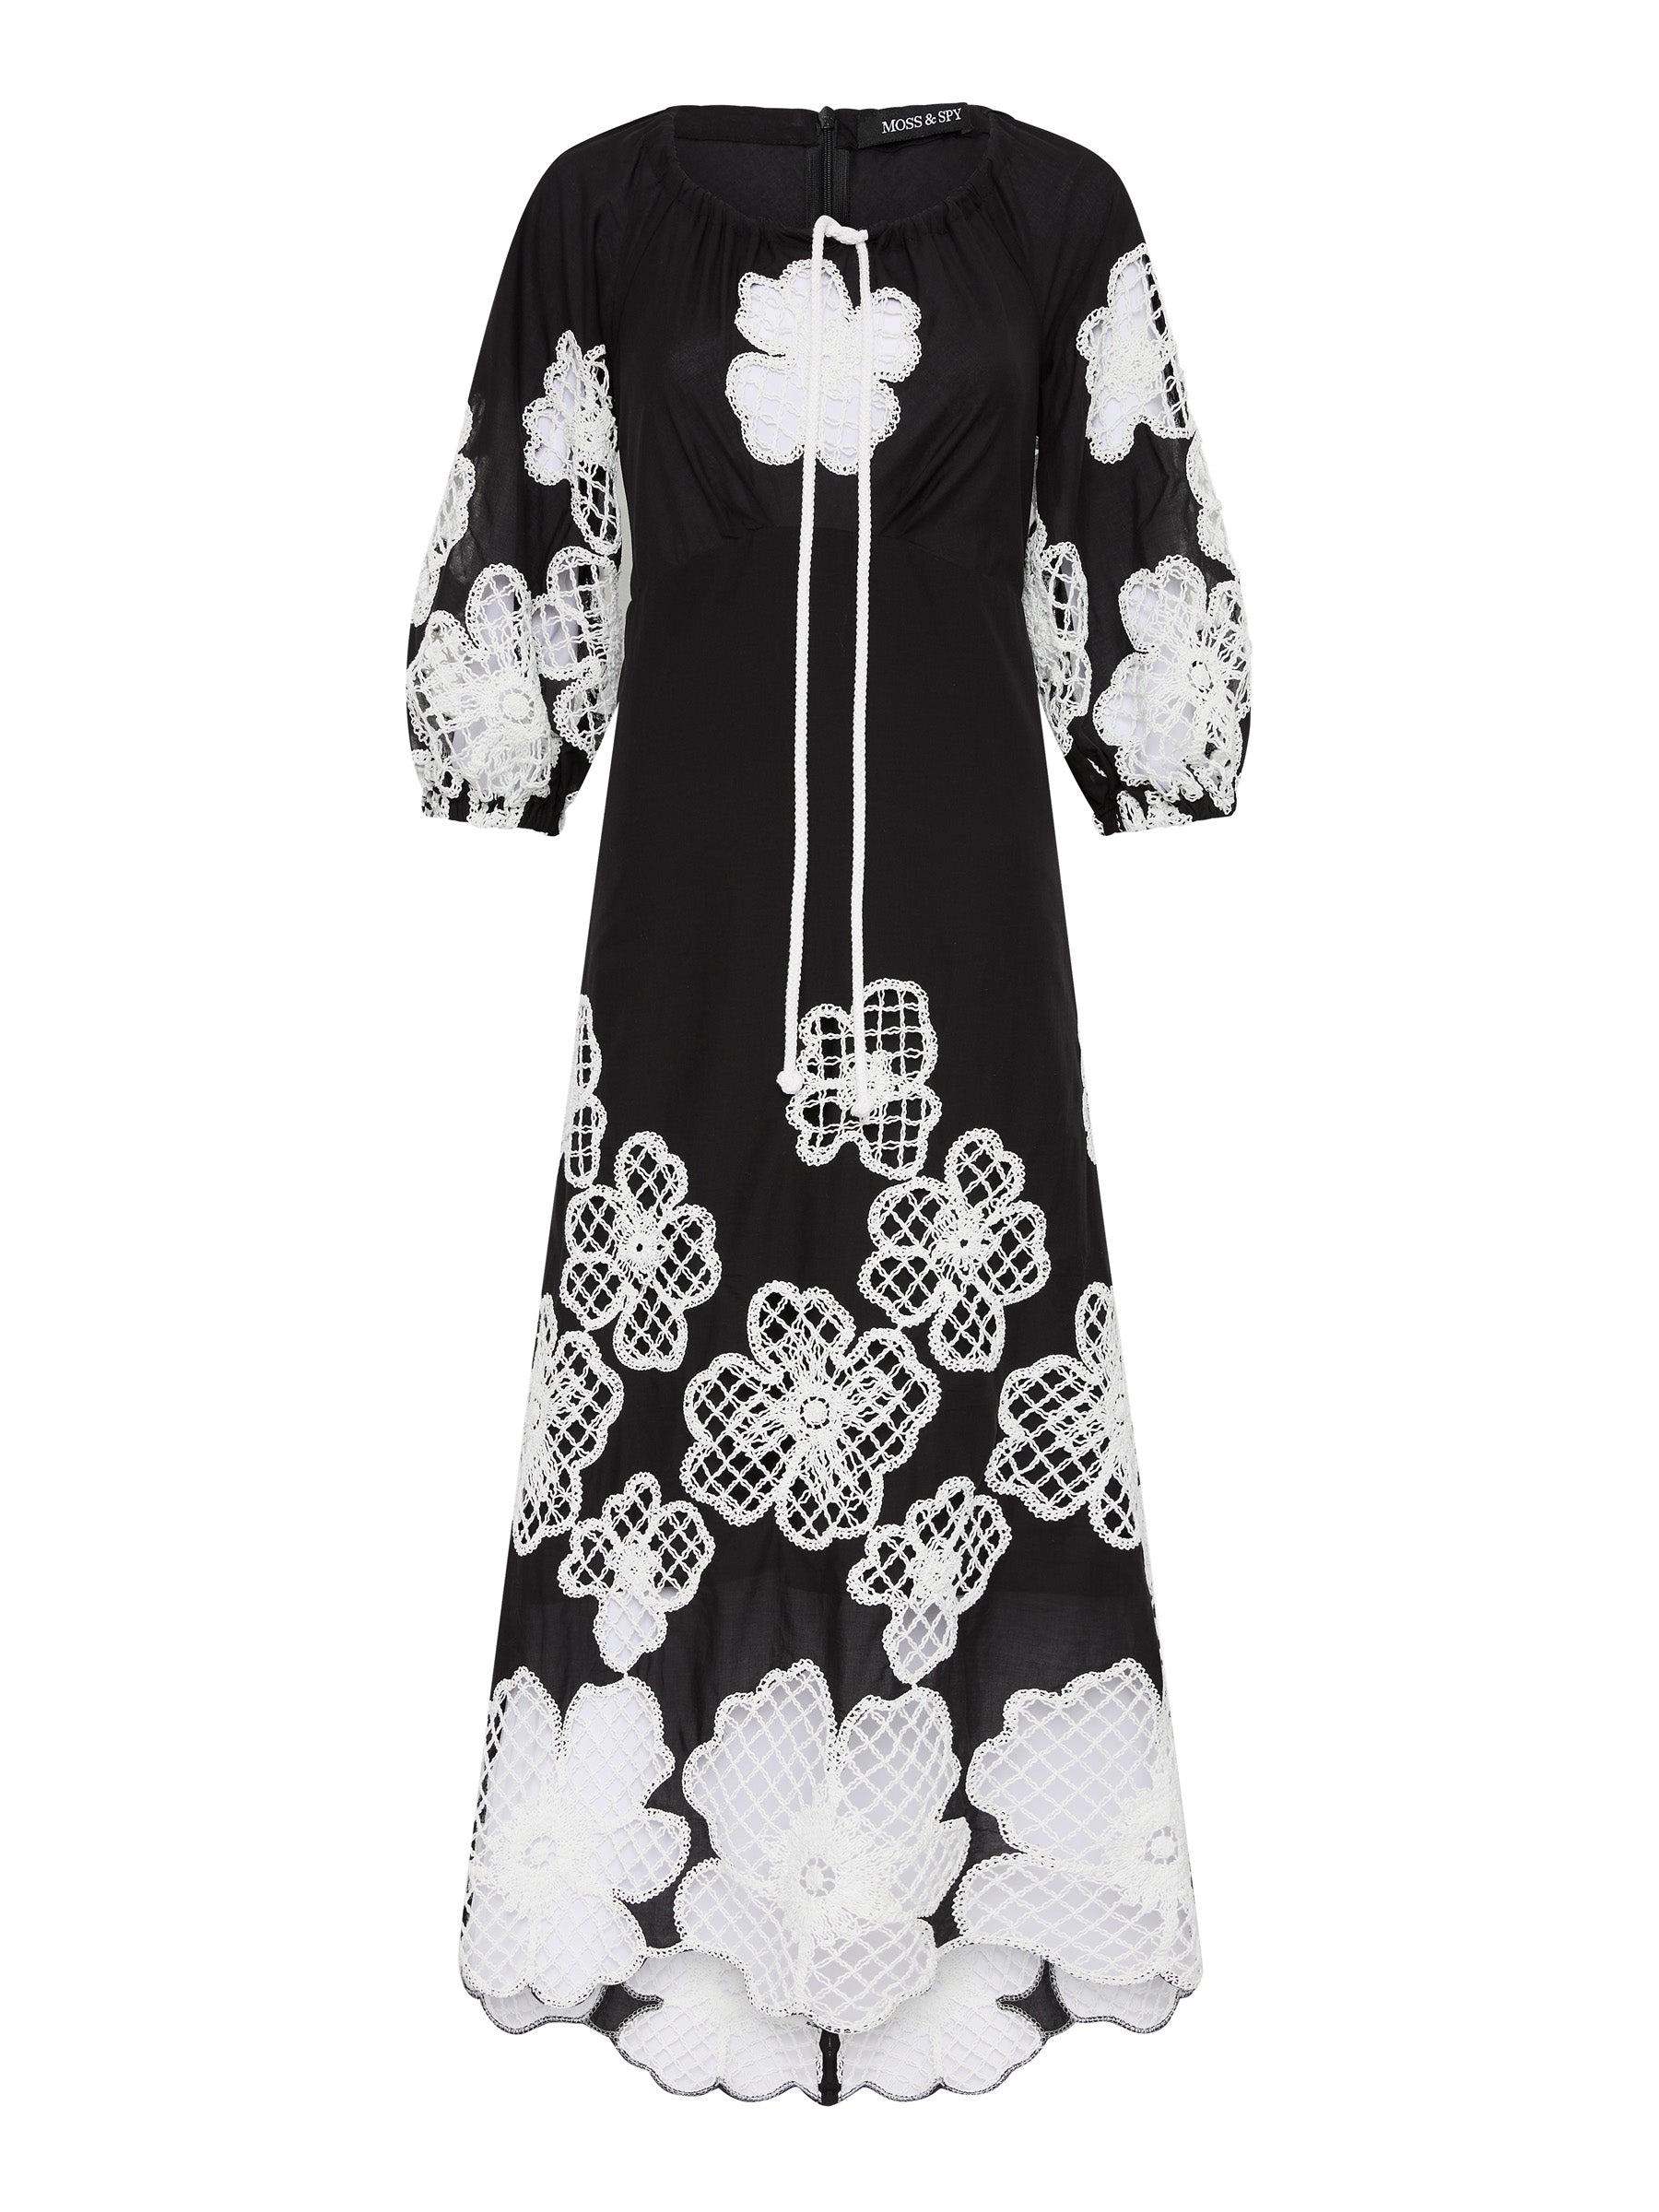 St Tropez Dress - Black/Ivory